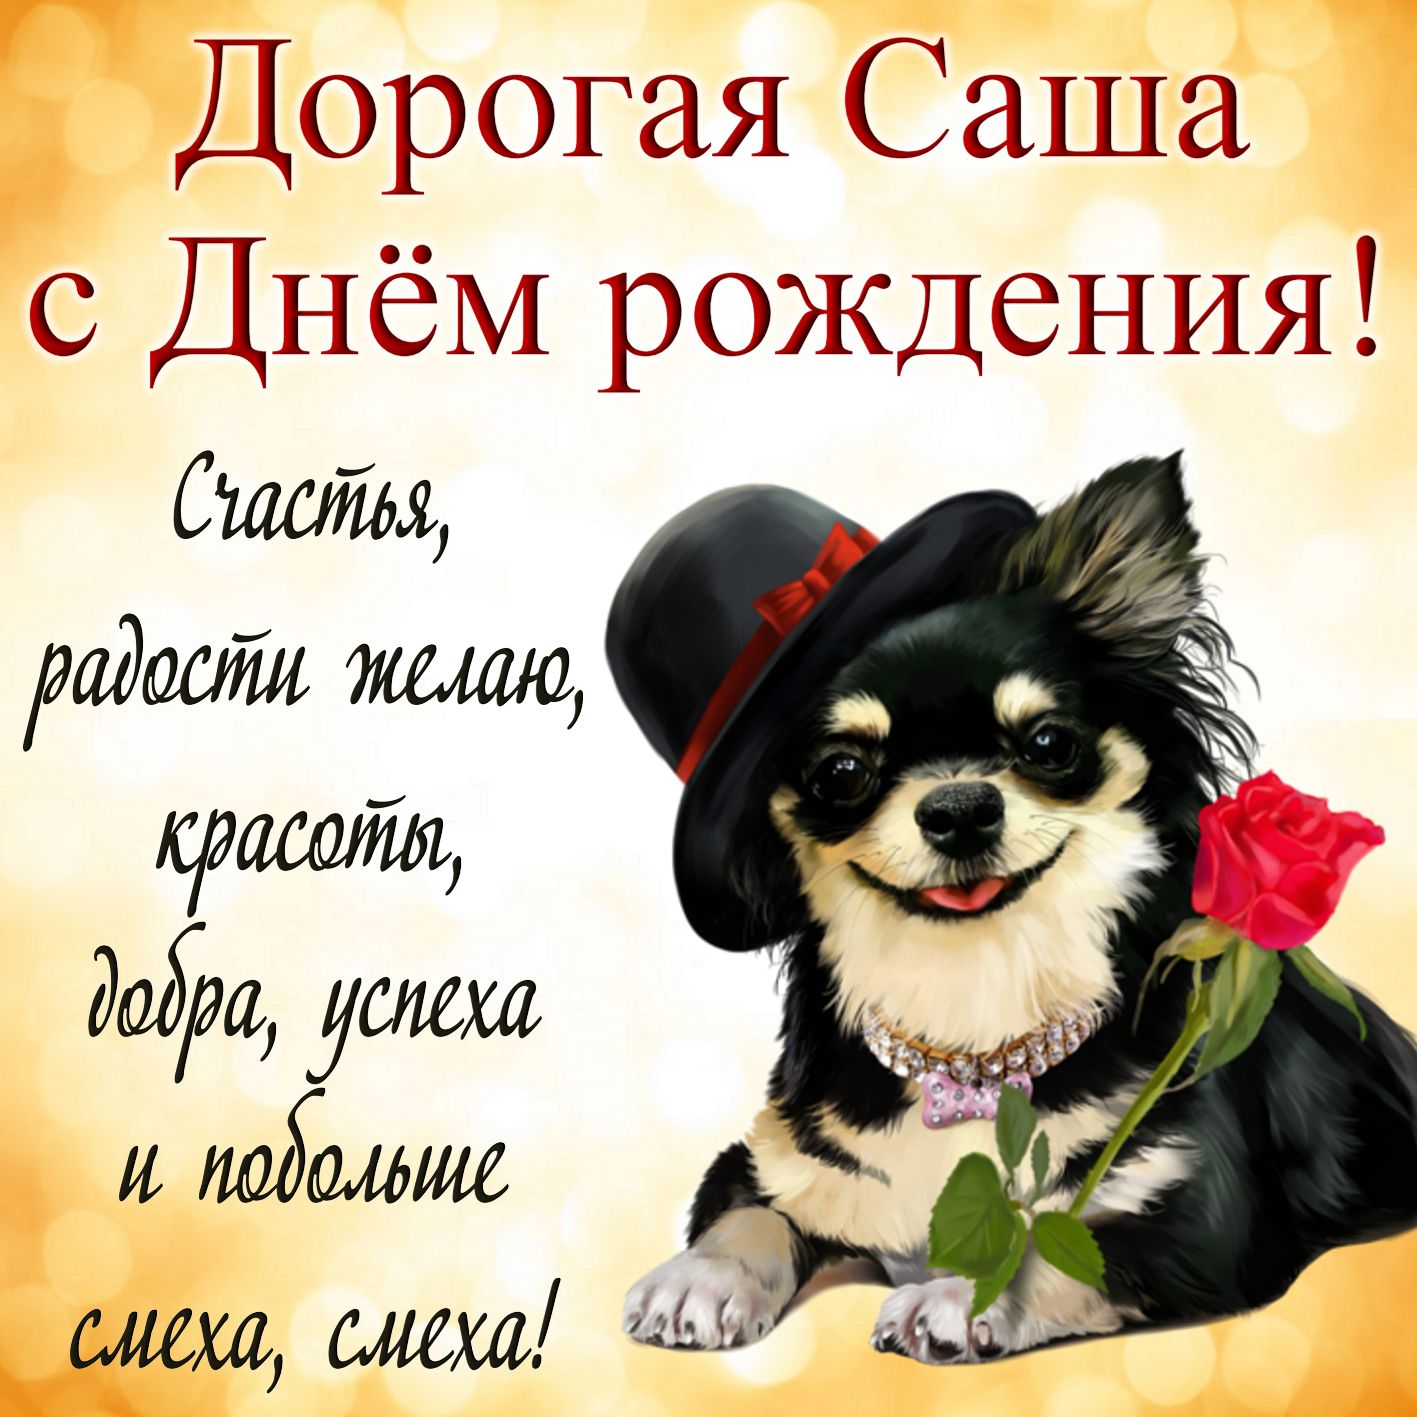 Открытка Александре на День рождения - милая собачка в шляпке с розой